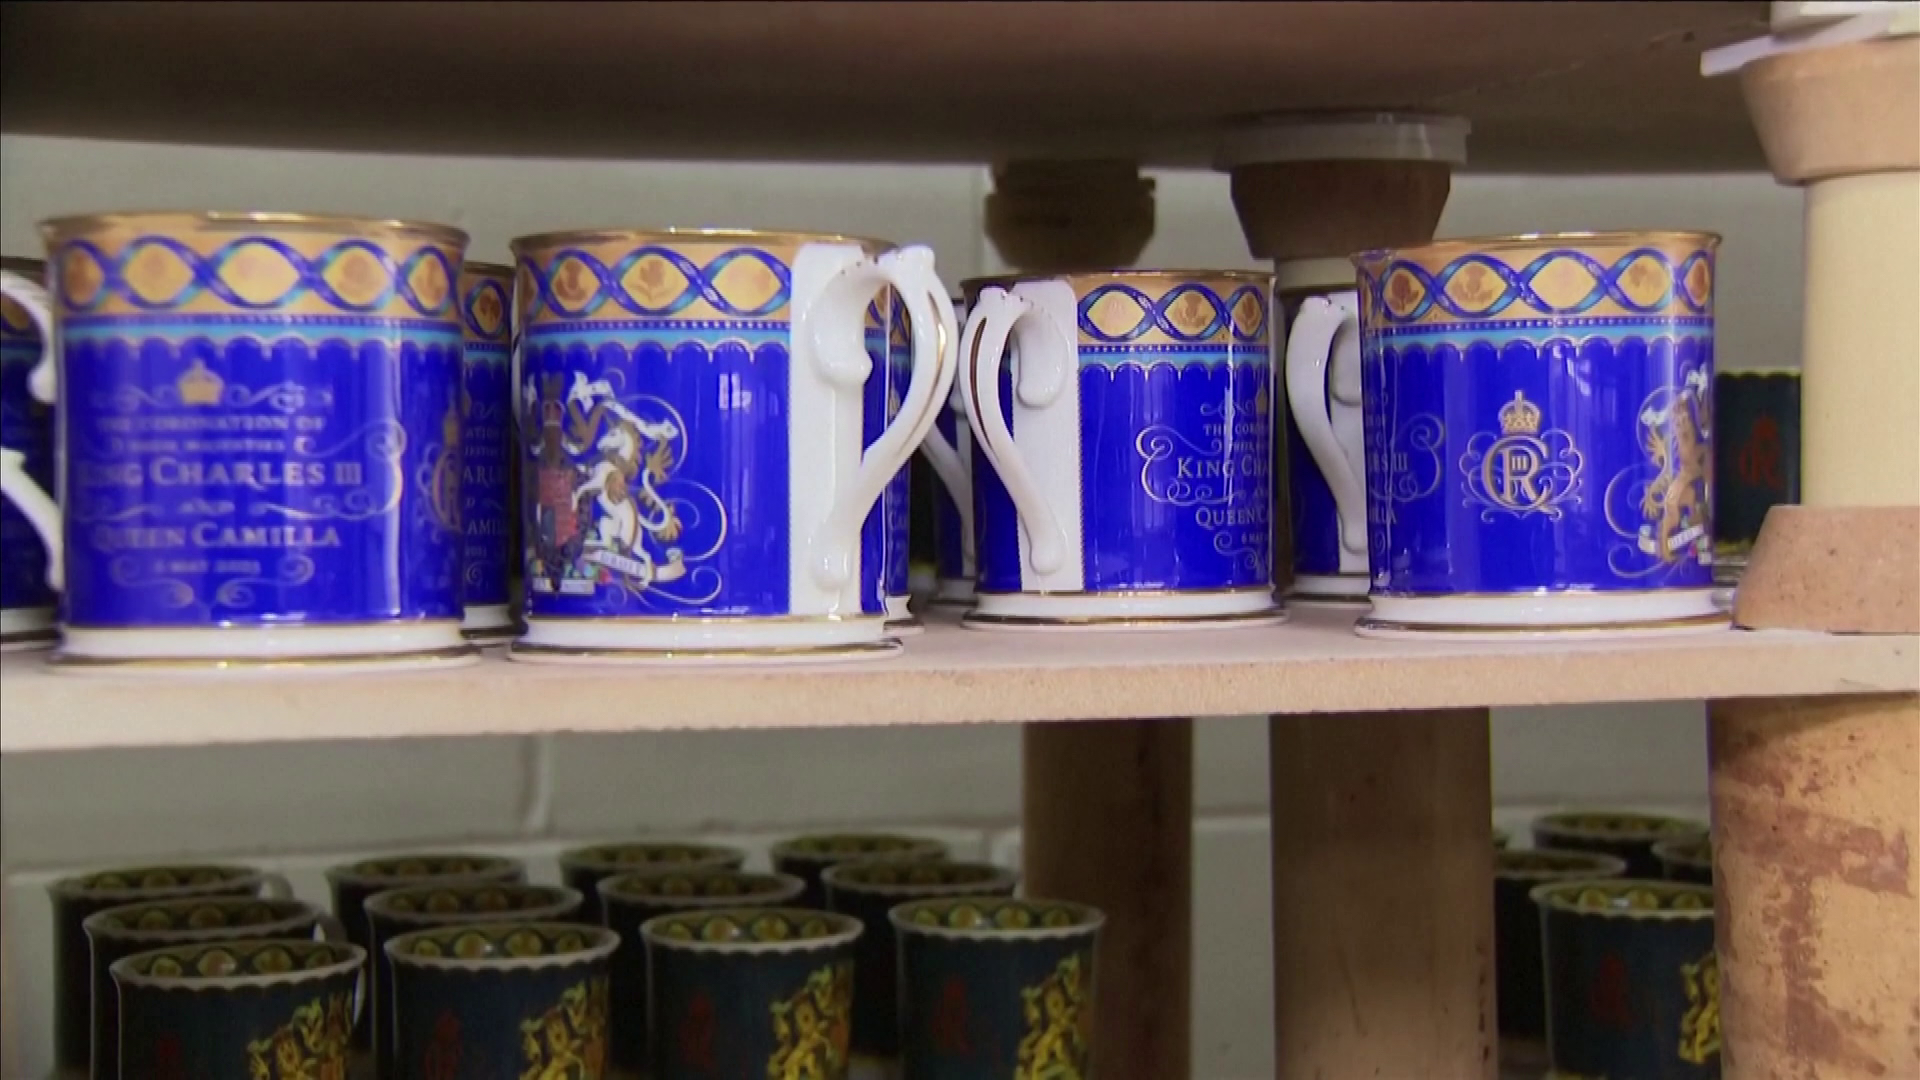 Különleges porcelán étkészletet adott ki a királyi család III. Károly koronázására